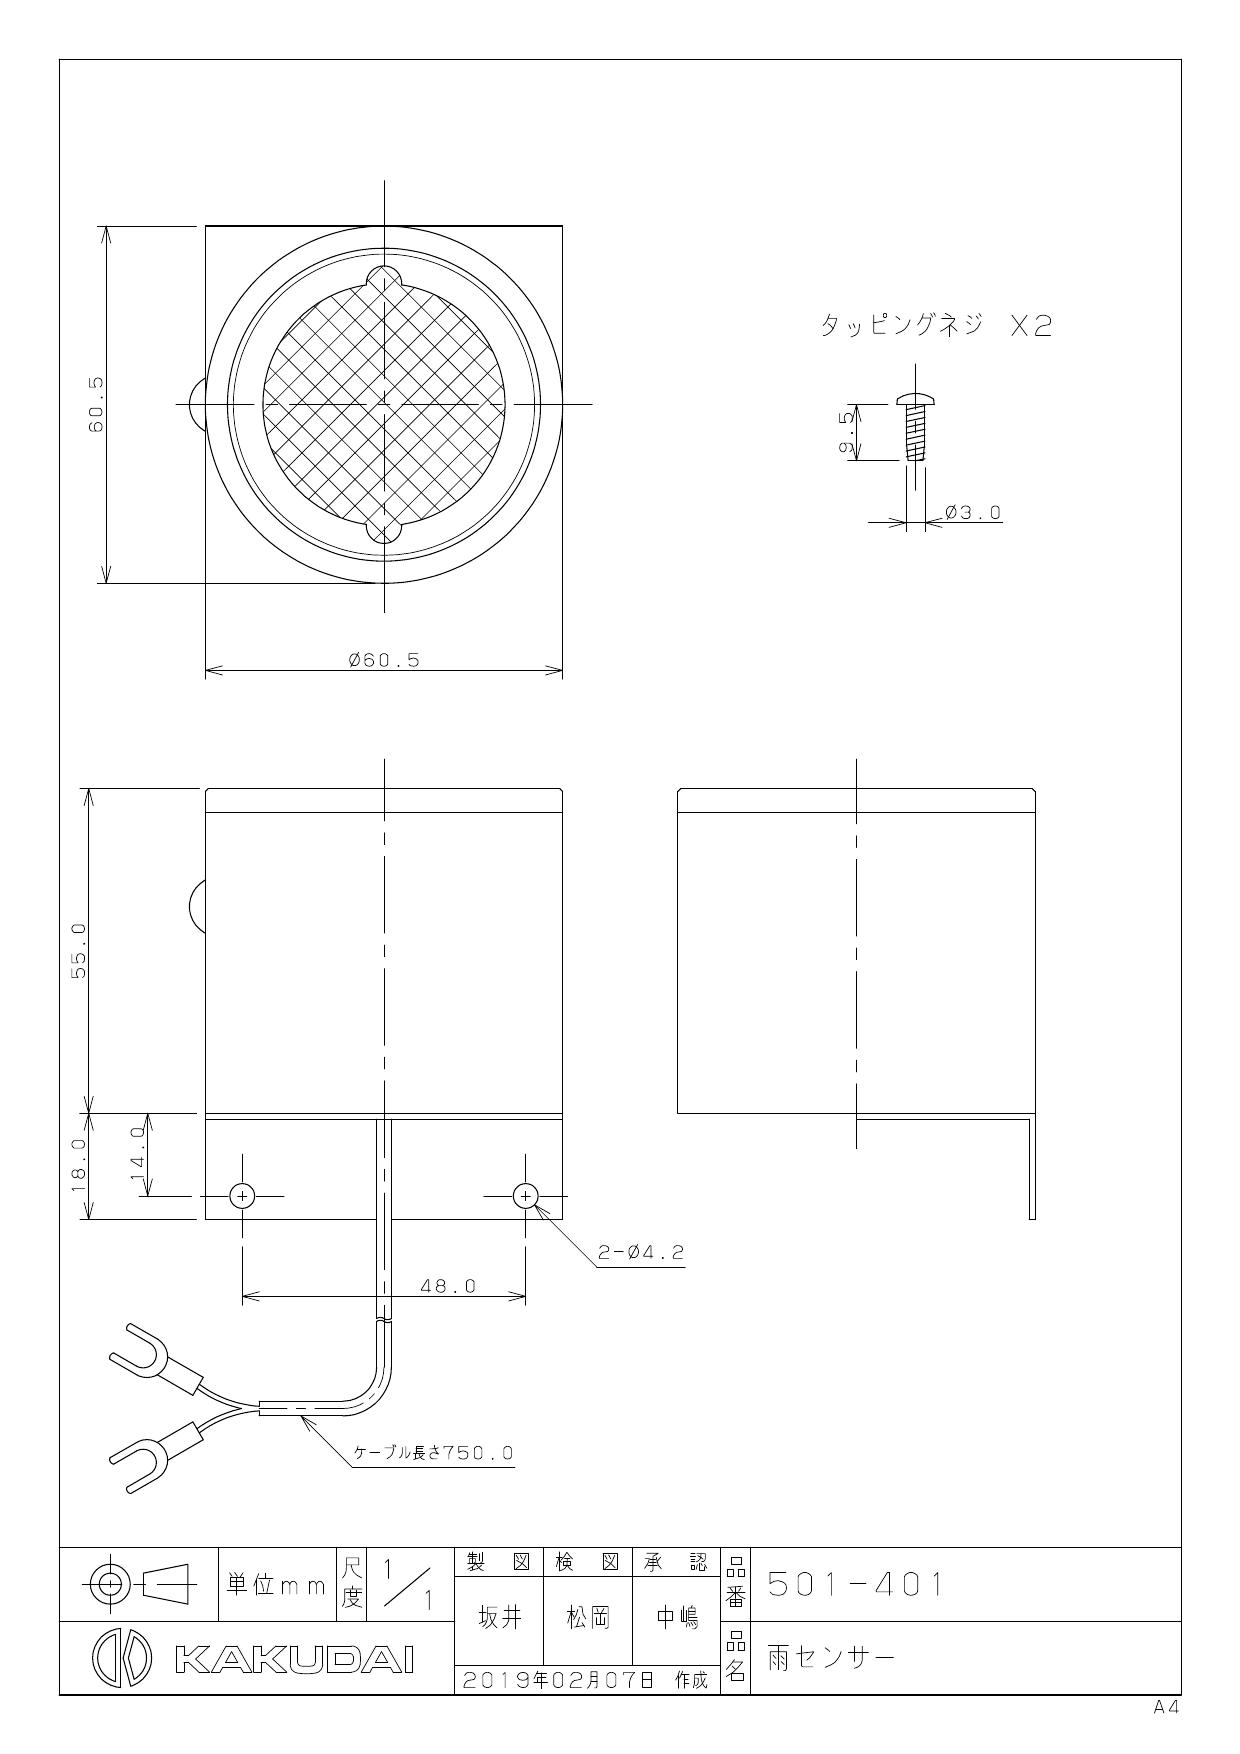 カクダイ 雨センサー 501-401 - 3